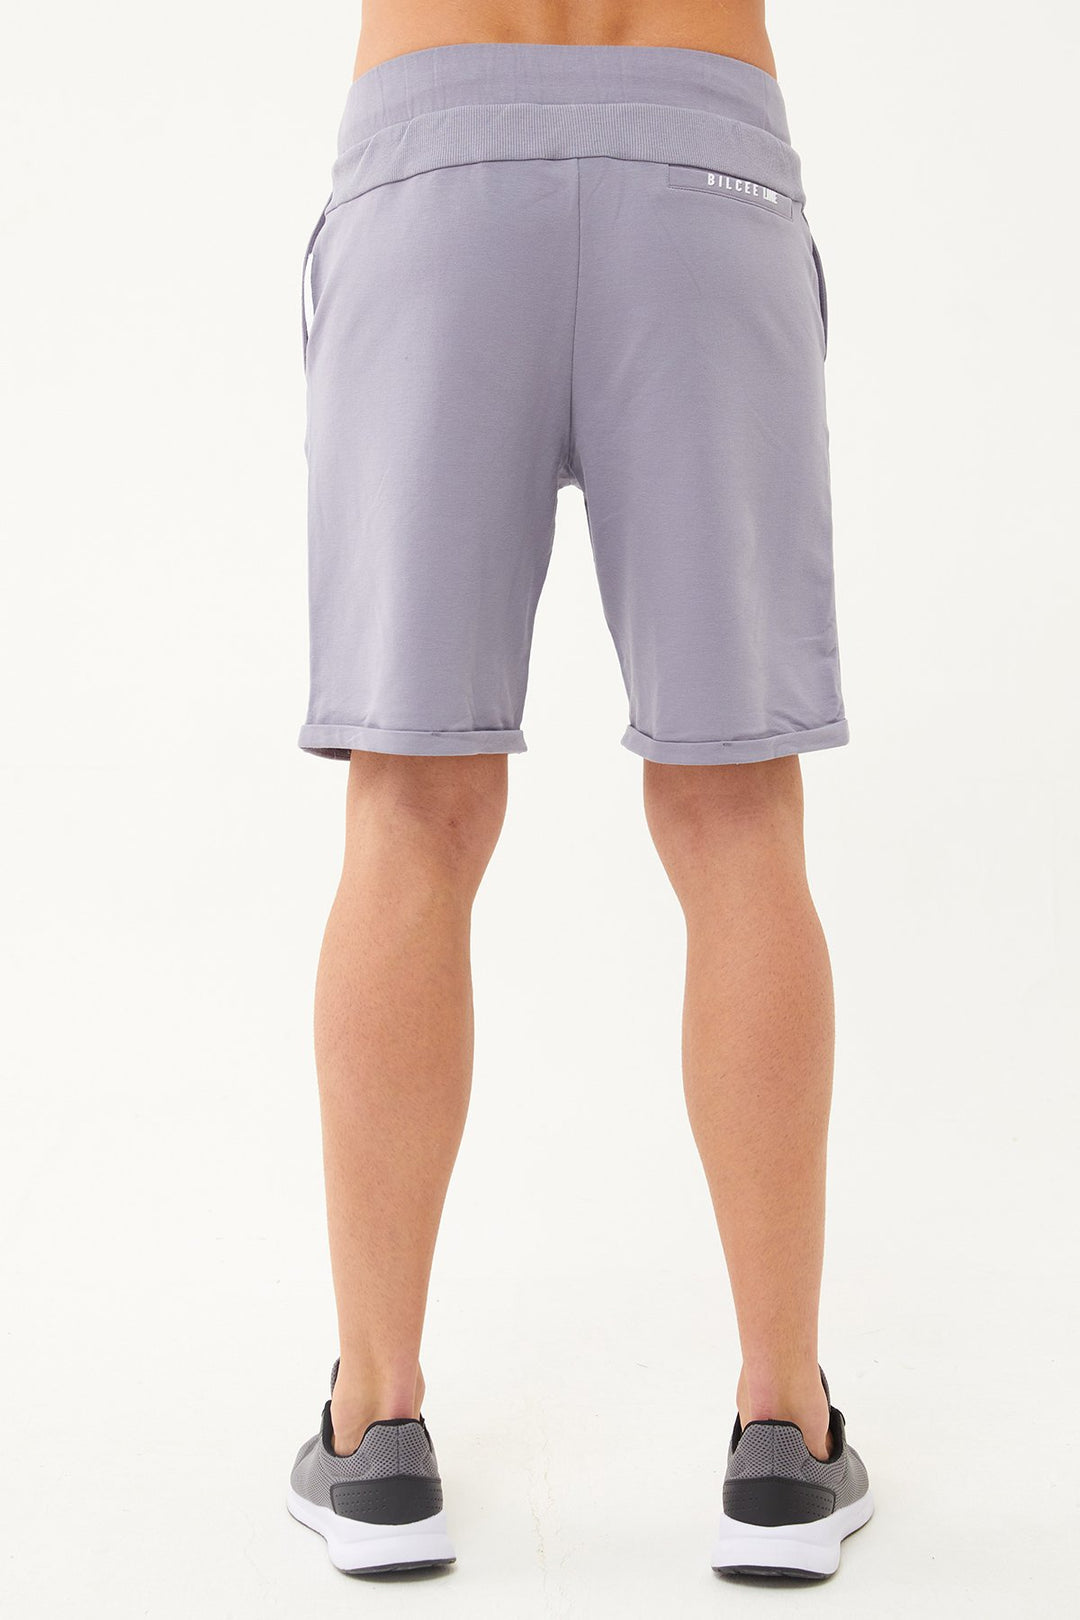 Herren-Shorts aus Baumwolle